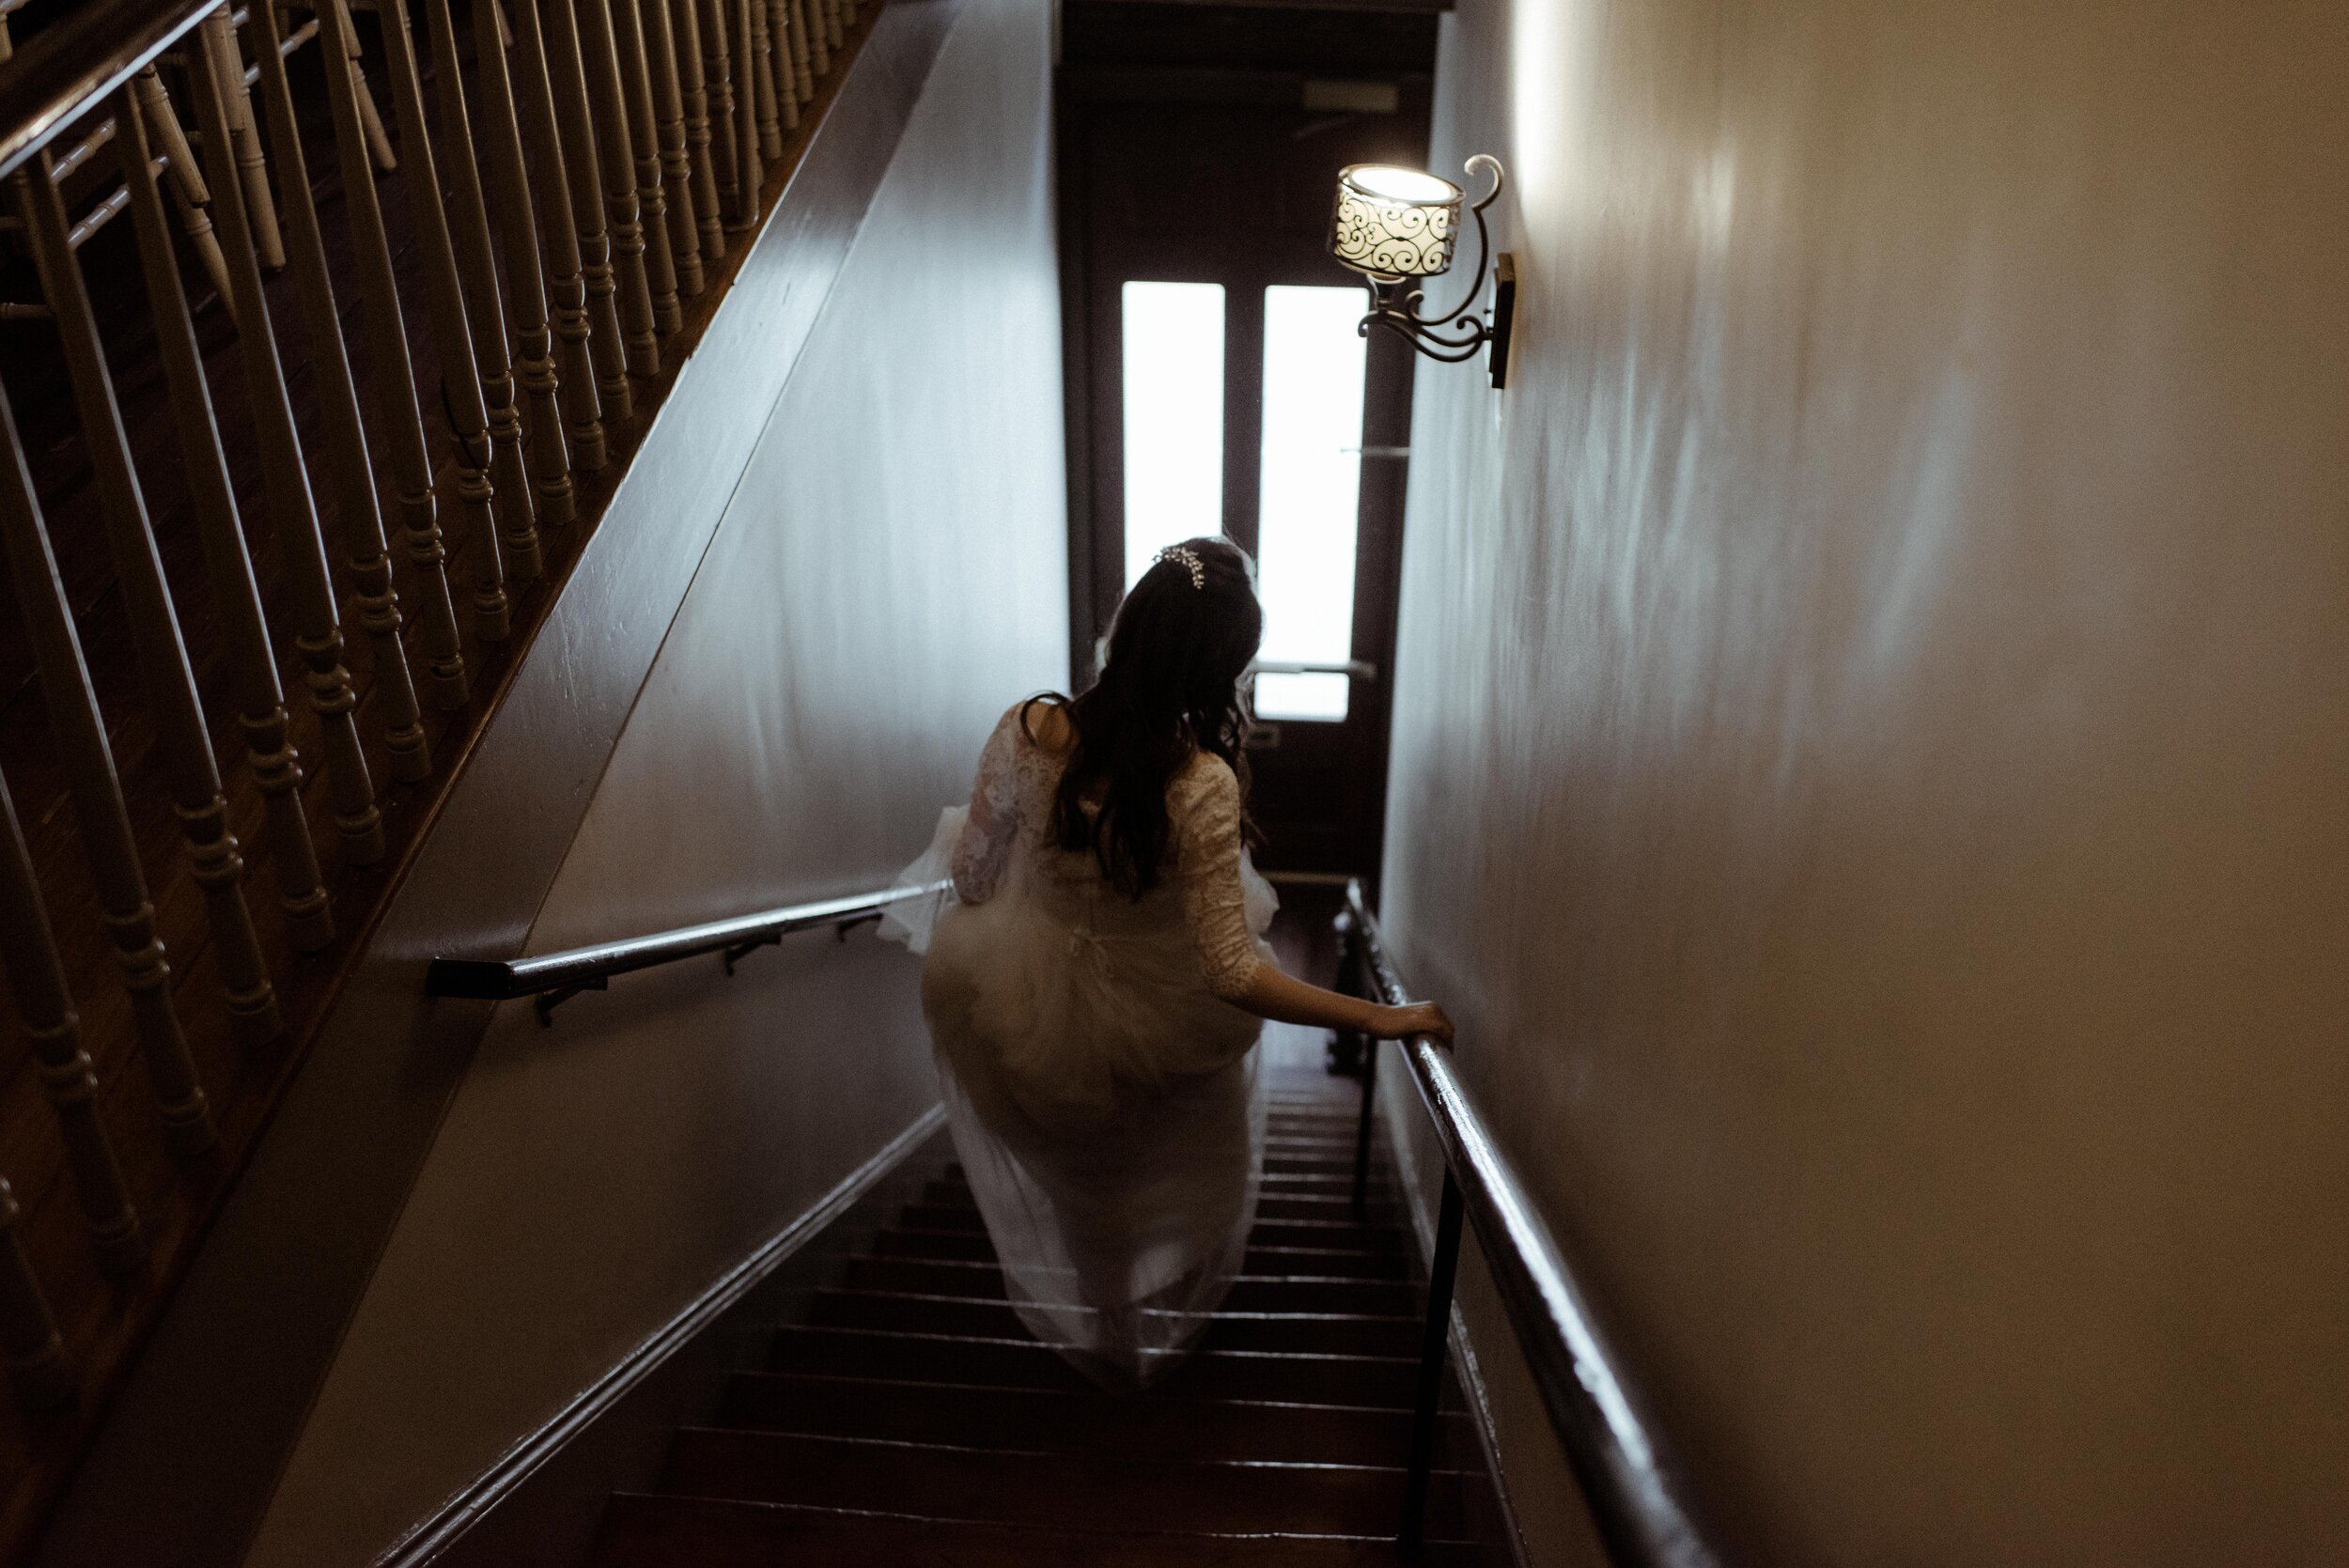 bride-on-stairs-10-downing-savannah.jpg